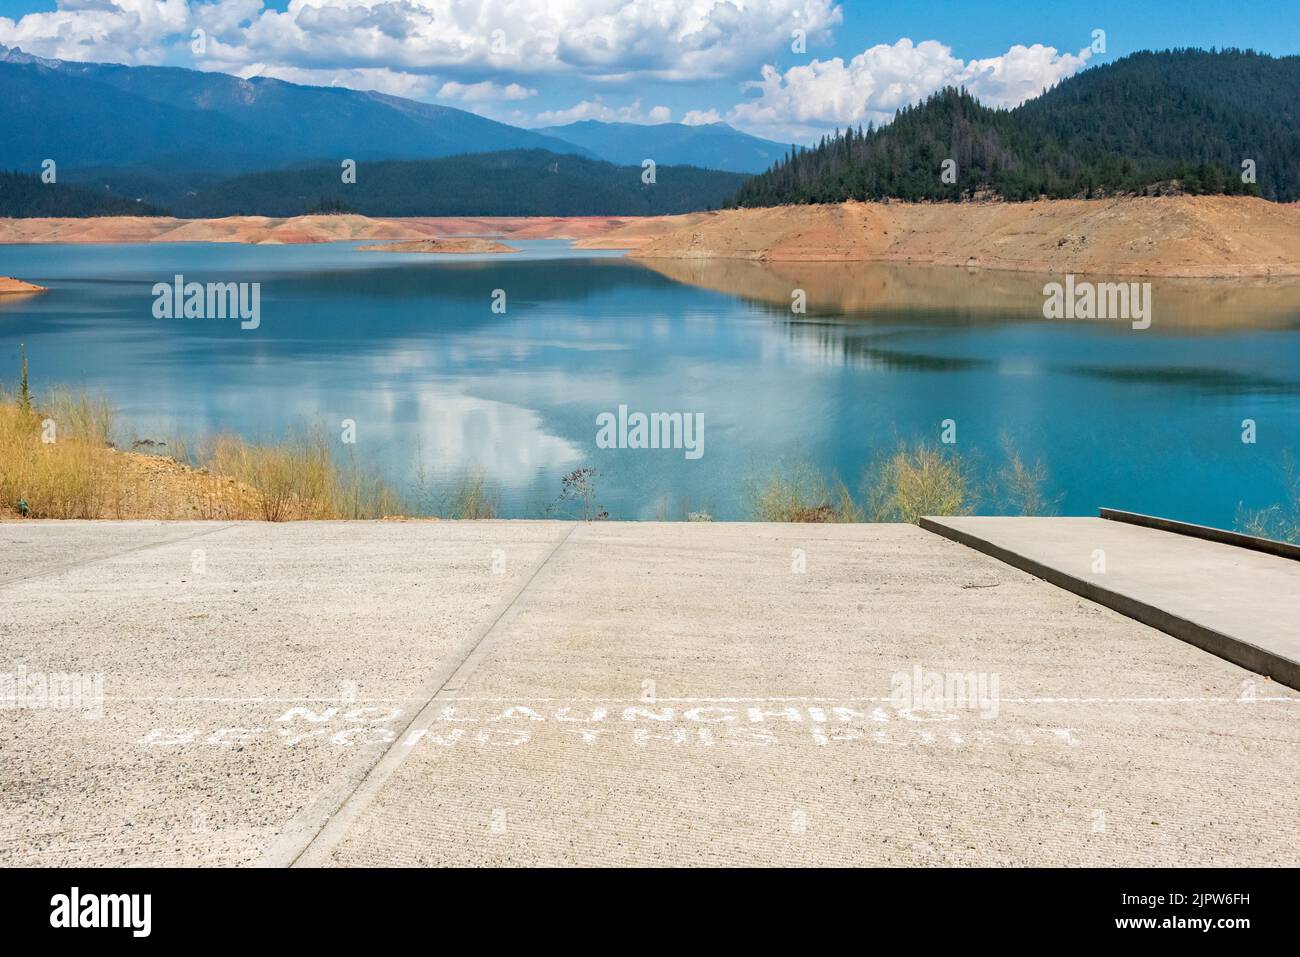 Une rampe de mise à l'eau descend de plusieurs étages au-dessus du niveau de l'eau à Trinity Lake, abandonnée, en raison de la sécheresse sévère en Californie: Pas de lancement au-delà... Banque D'Images